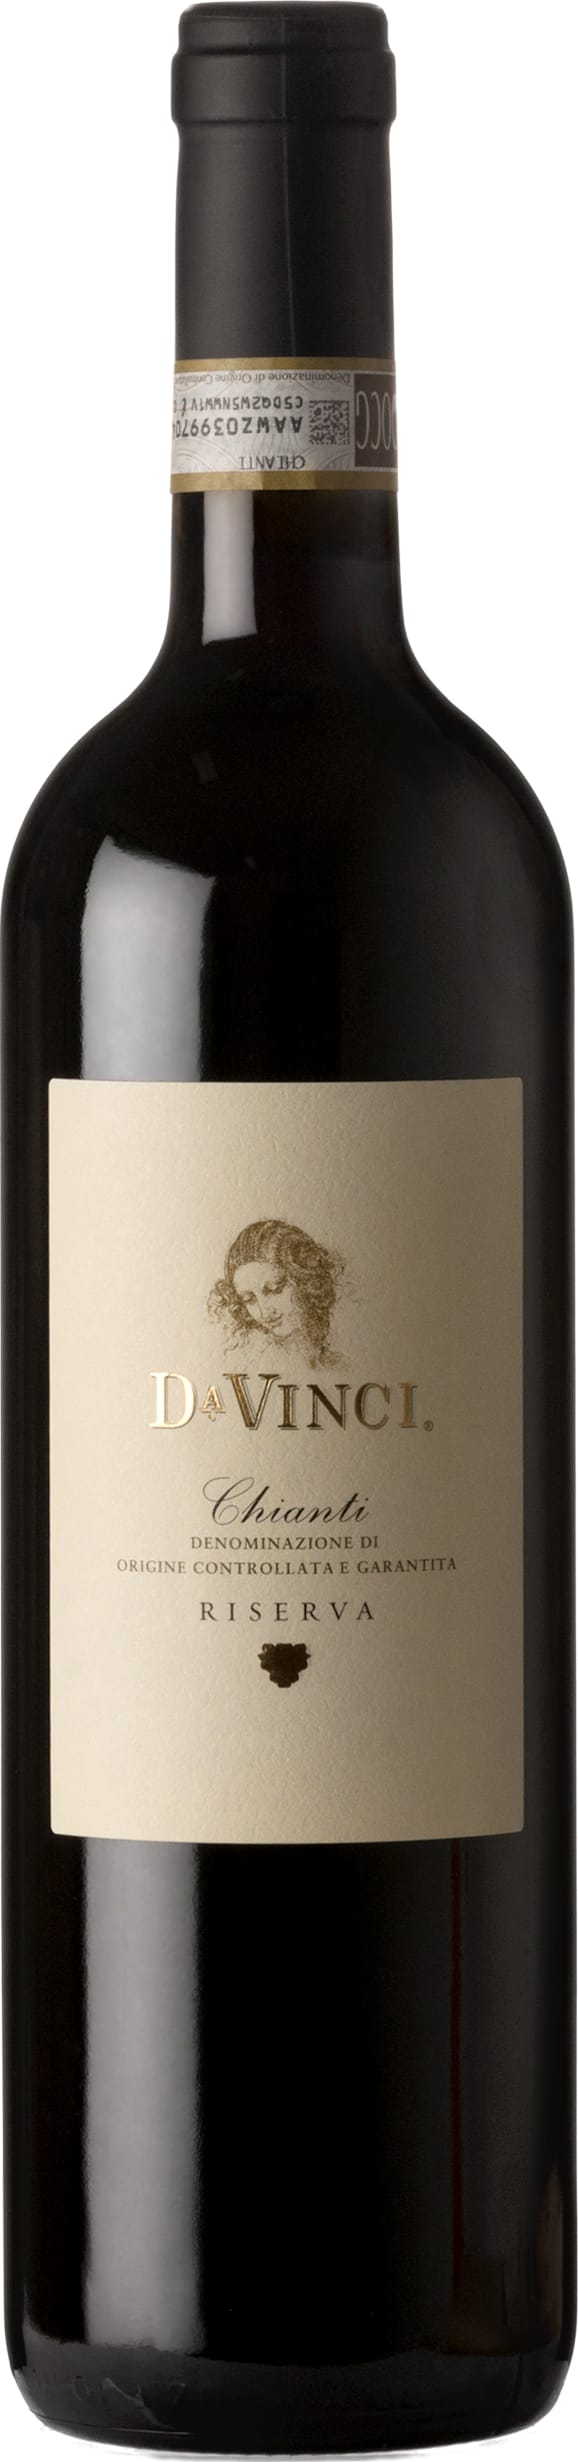 Cantine Leonardo Da Vinci Chianti Riserva 2019 75cl - Buy Cantine Leonardo Da Vinci Wines from GREAT WINES DIRECT wine shop